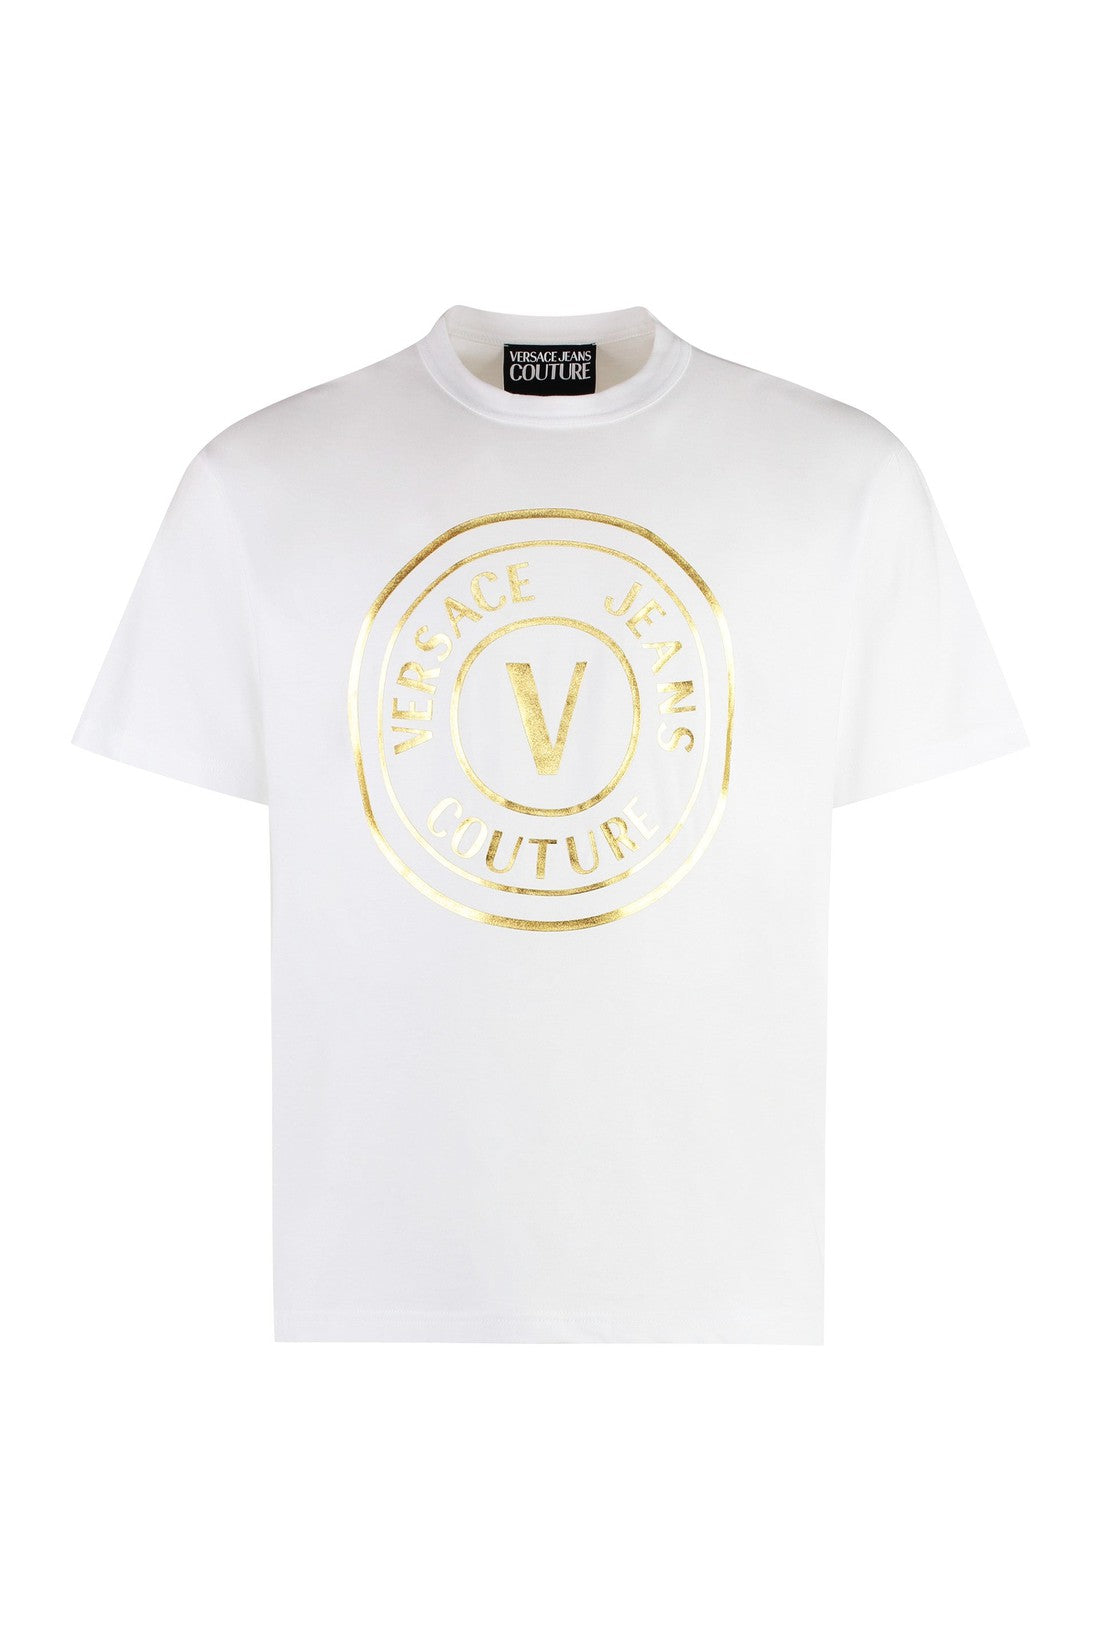 Versace Jeans Couture-OUTLET-SALE-Cotton crew-neck T-shirt-ARCHIVIST